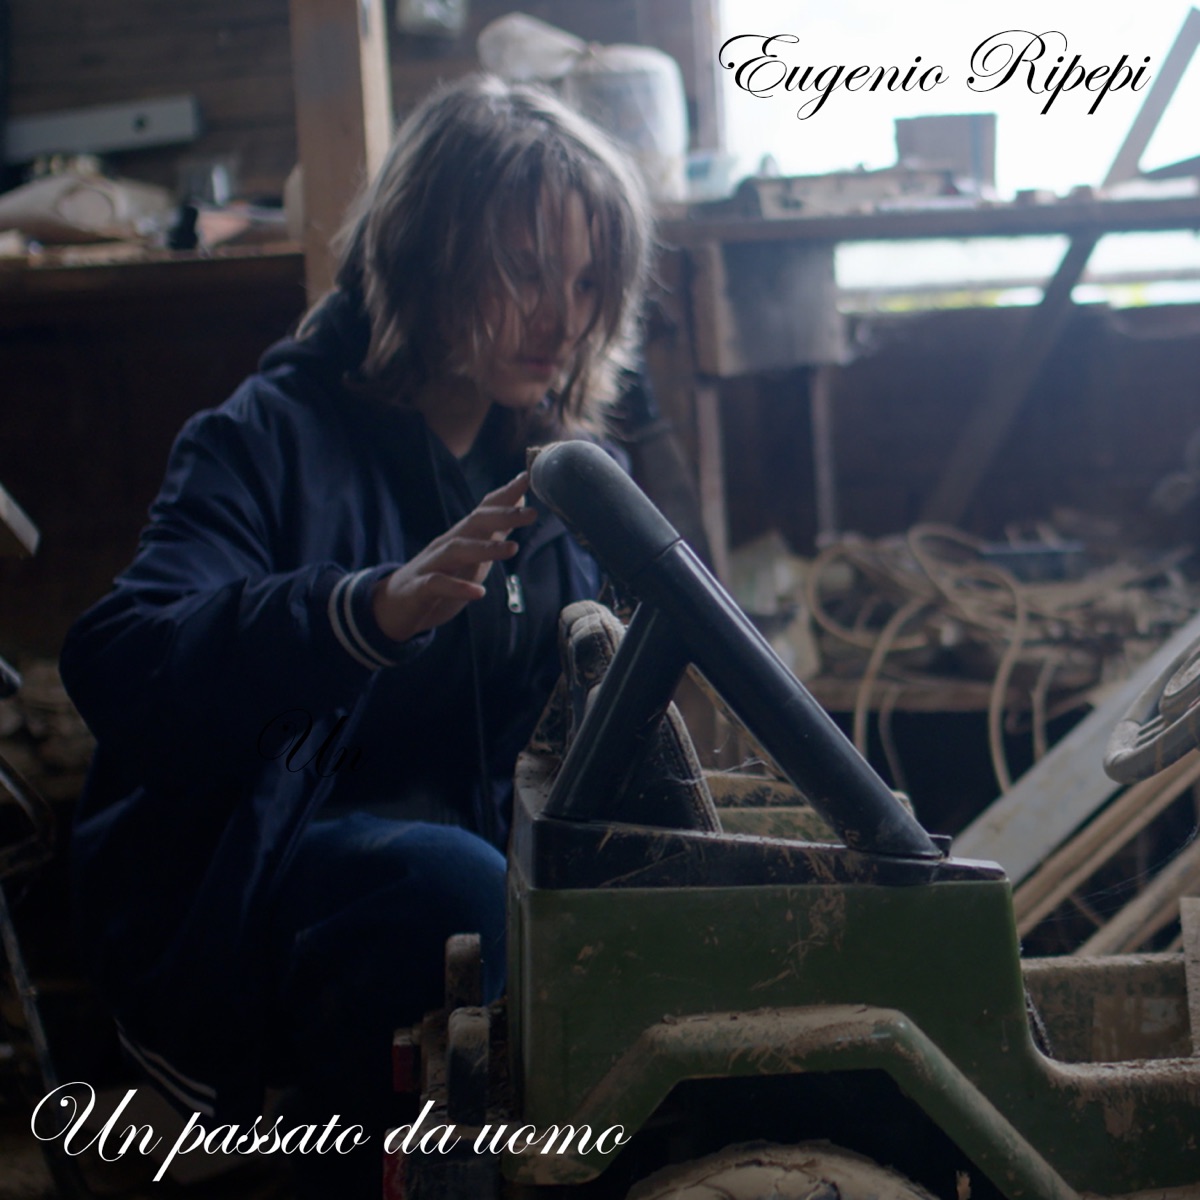 Paura di vivere - Single - Album by Eugenio Ripepi - Apple Music